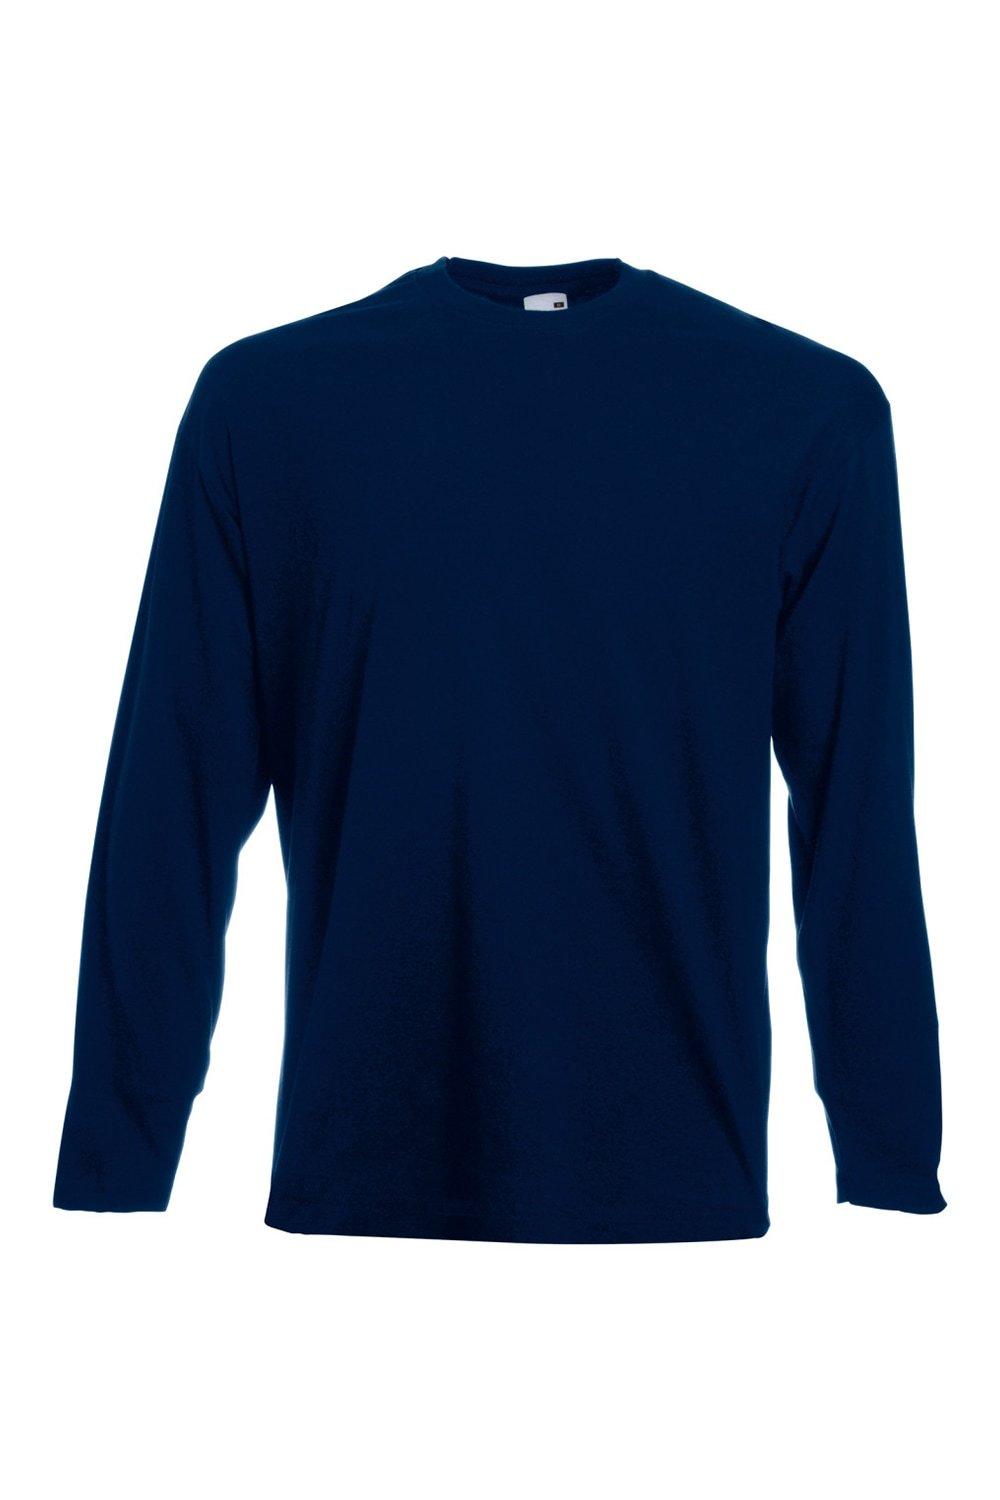 Повседневная футболка Value с длинным рукавом Universal Textiles, синий мужская футболка лиса русская краса xl серый меланж